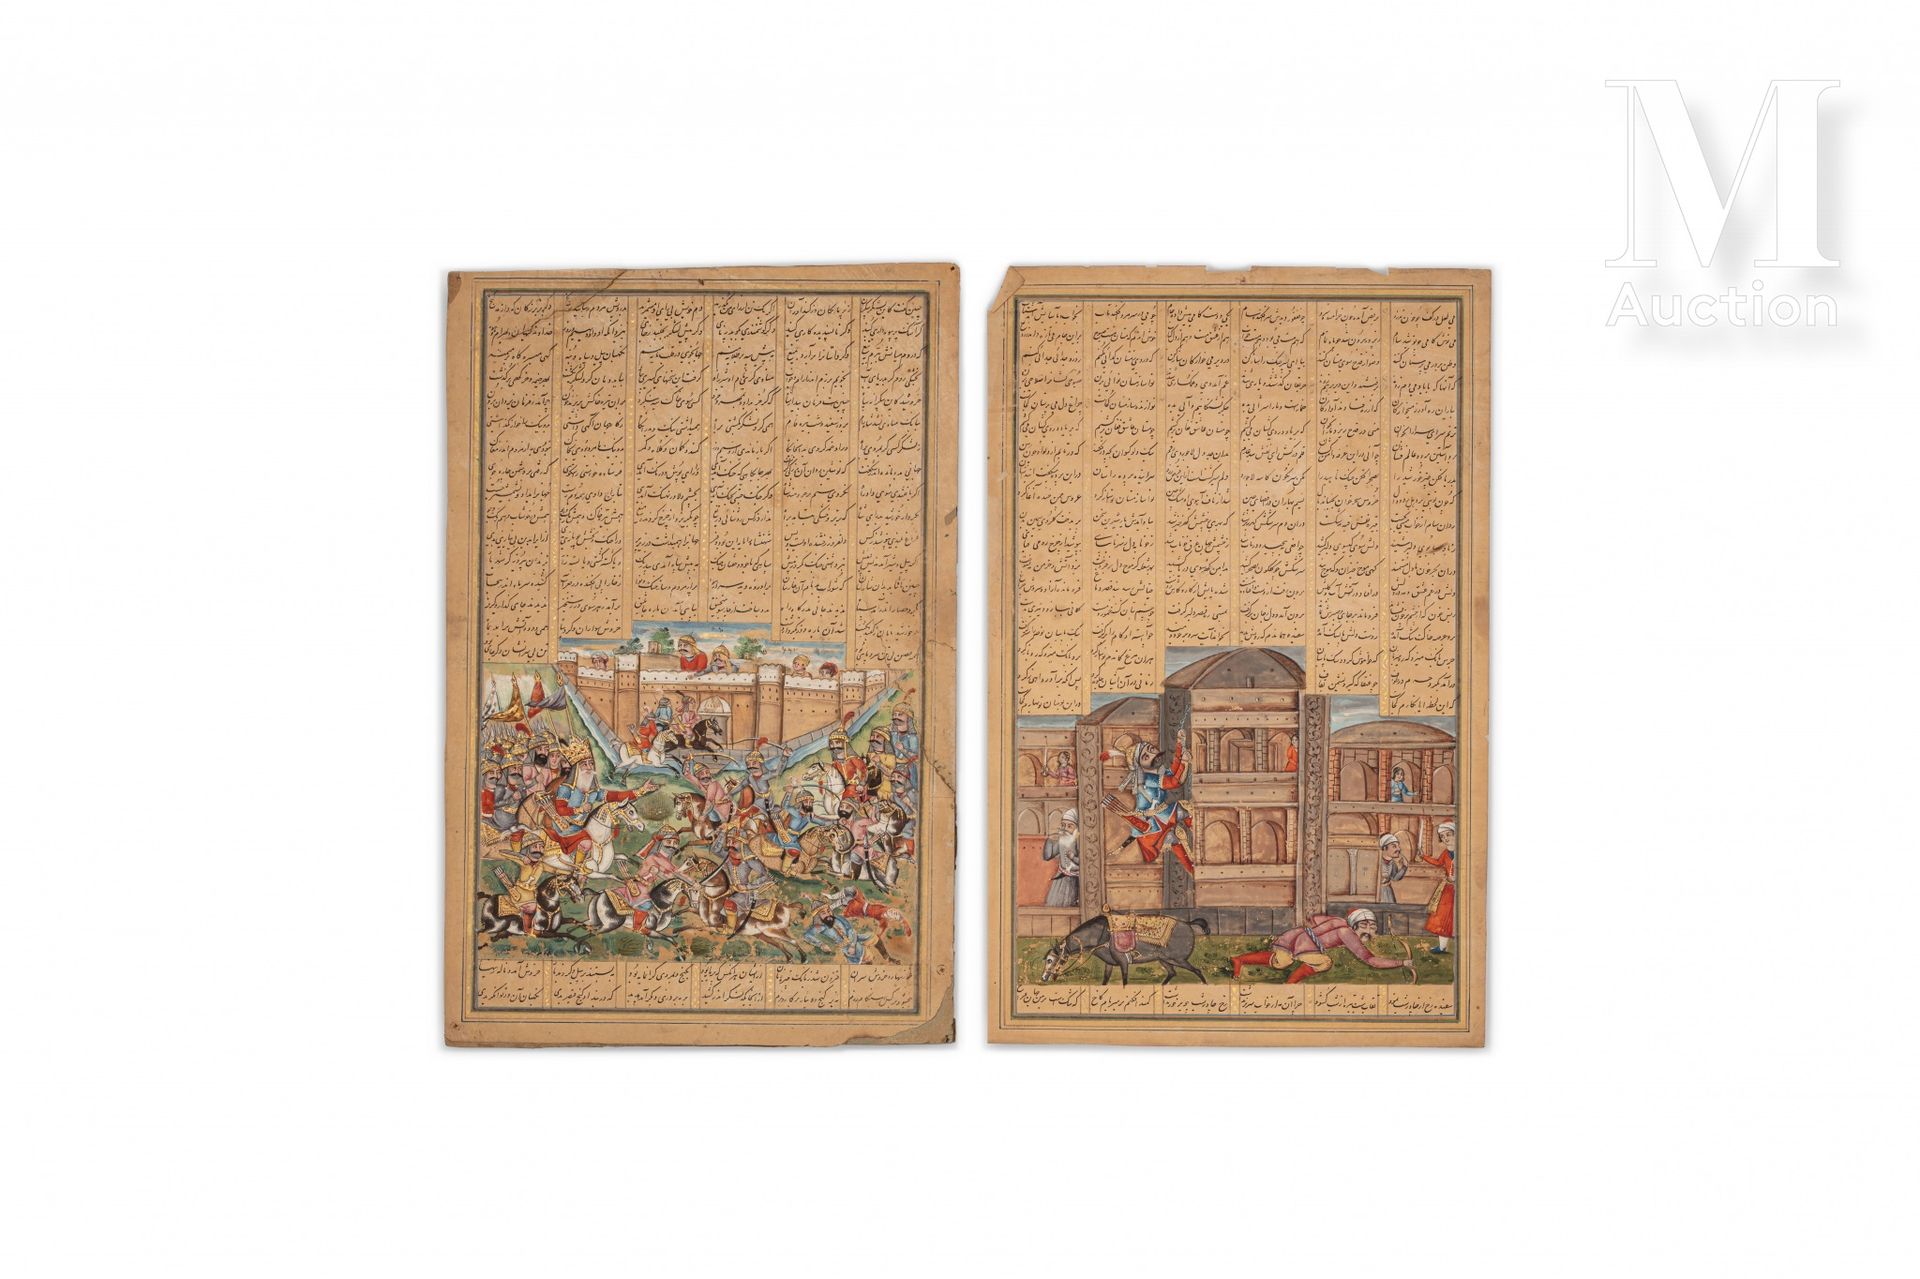 Livre des rois - Shahnameh Irán, alrededor de 1800

Dos hojas de un manuscrito p&hellip;